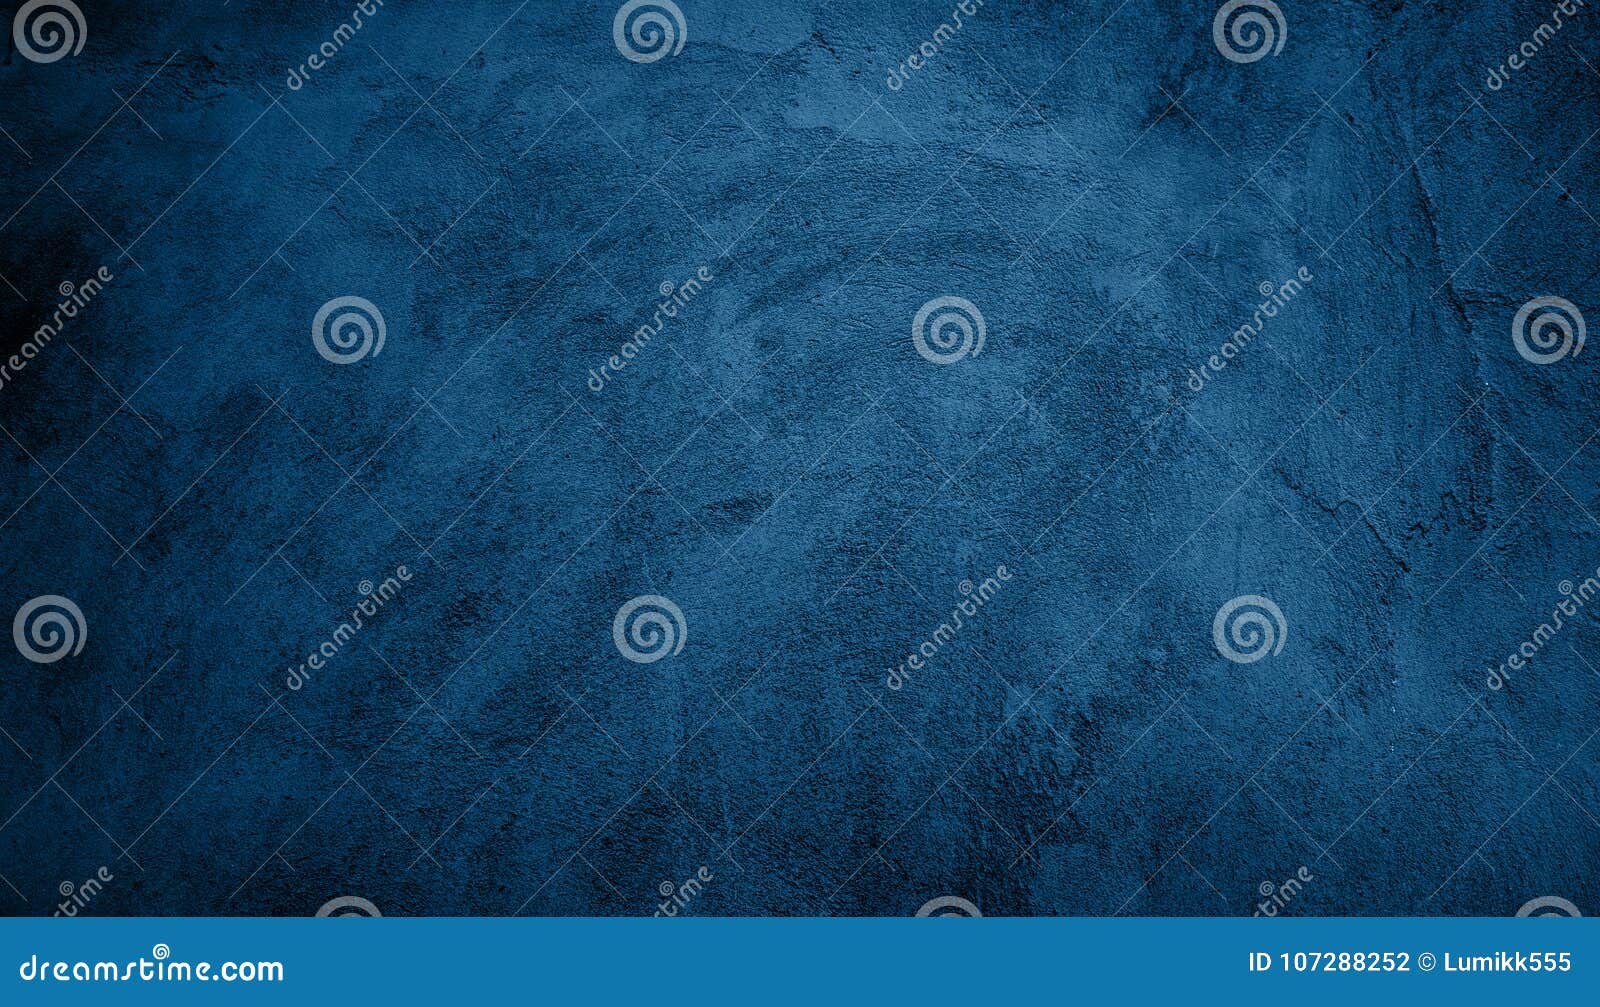 abstract grunge decorative navy blue dark background